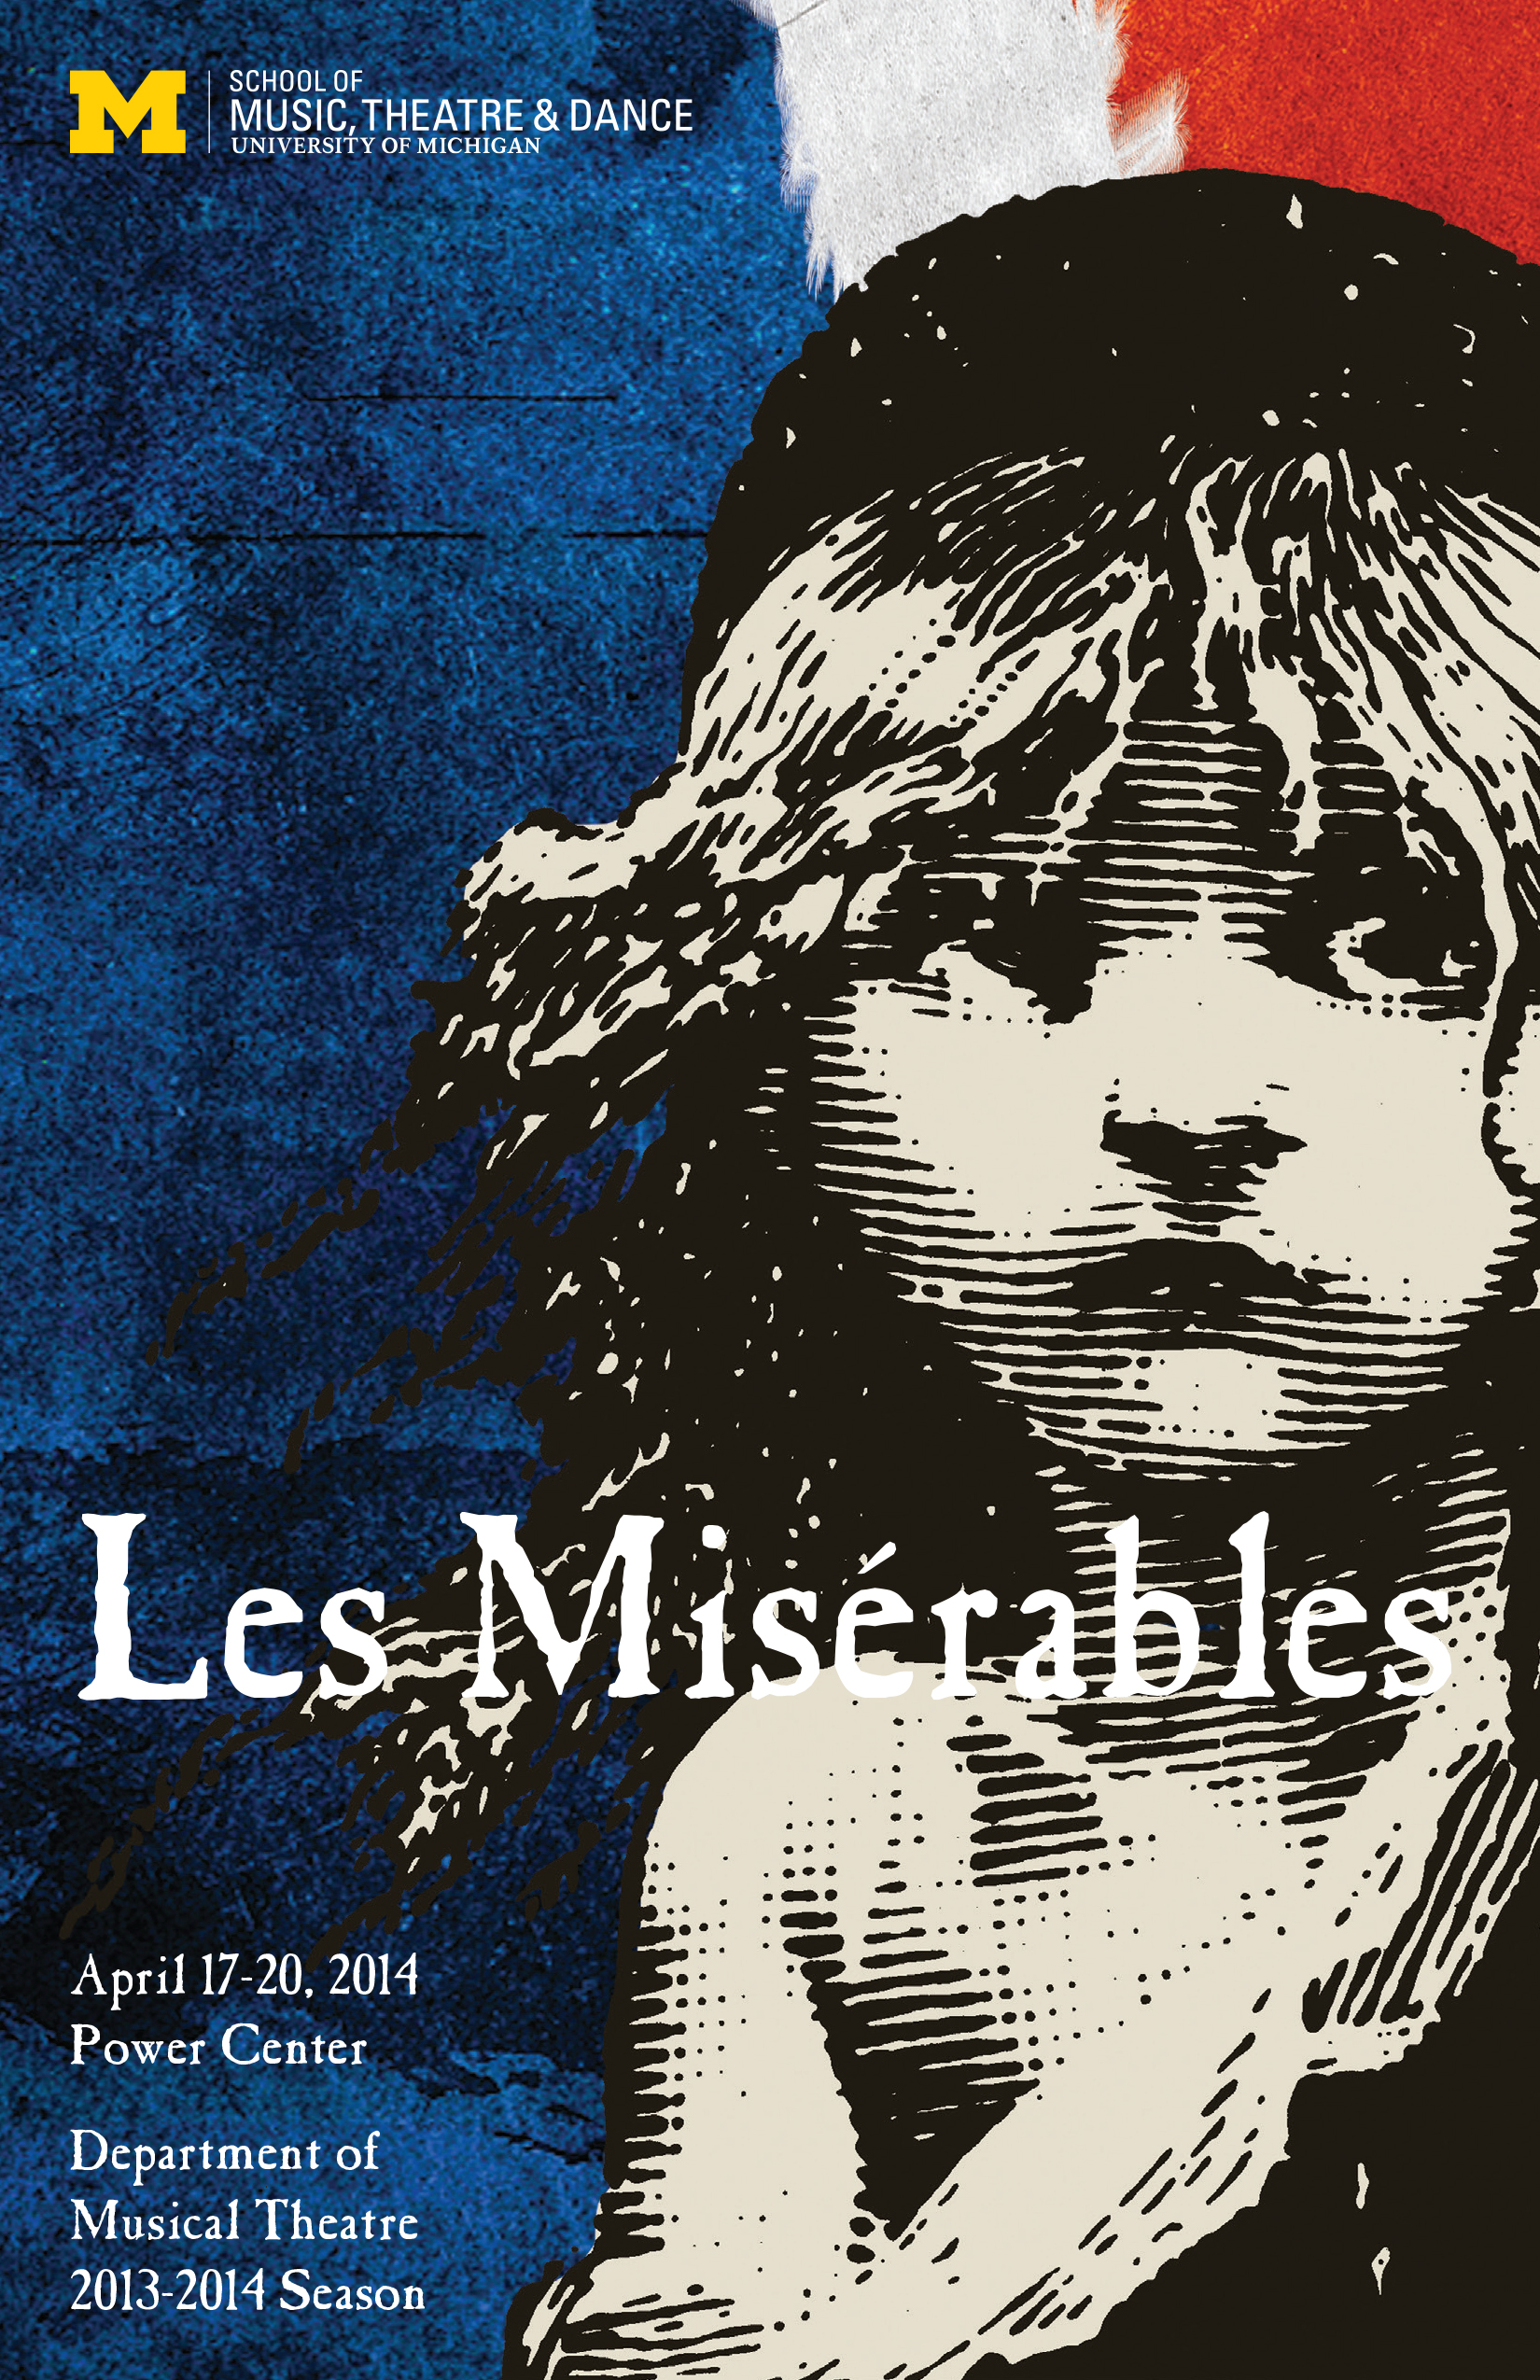 Tickets for Les Misérables musical